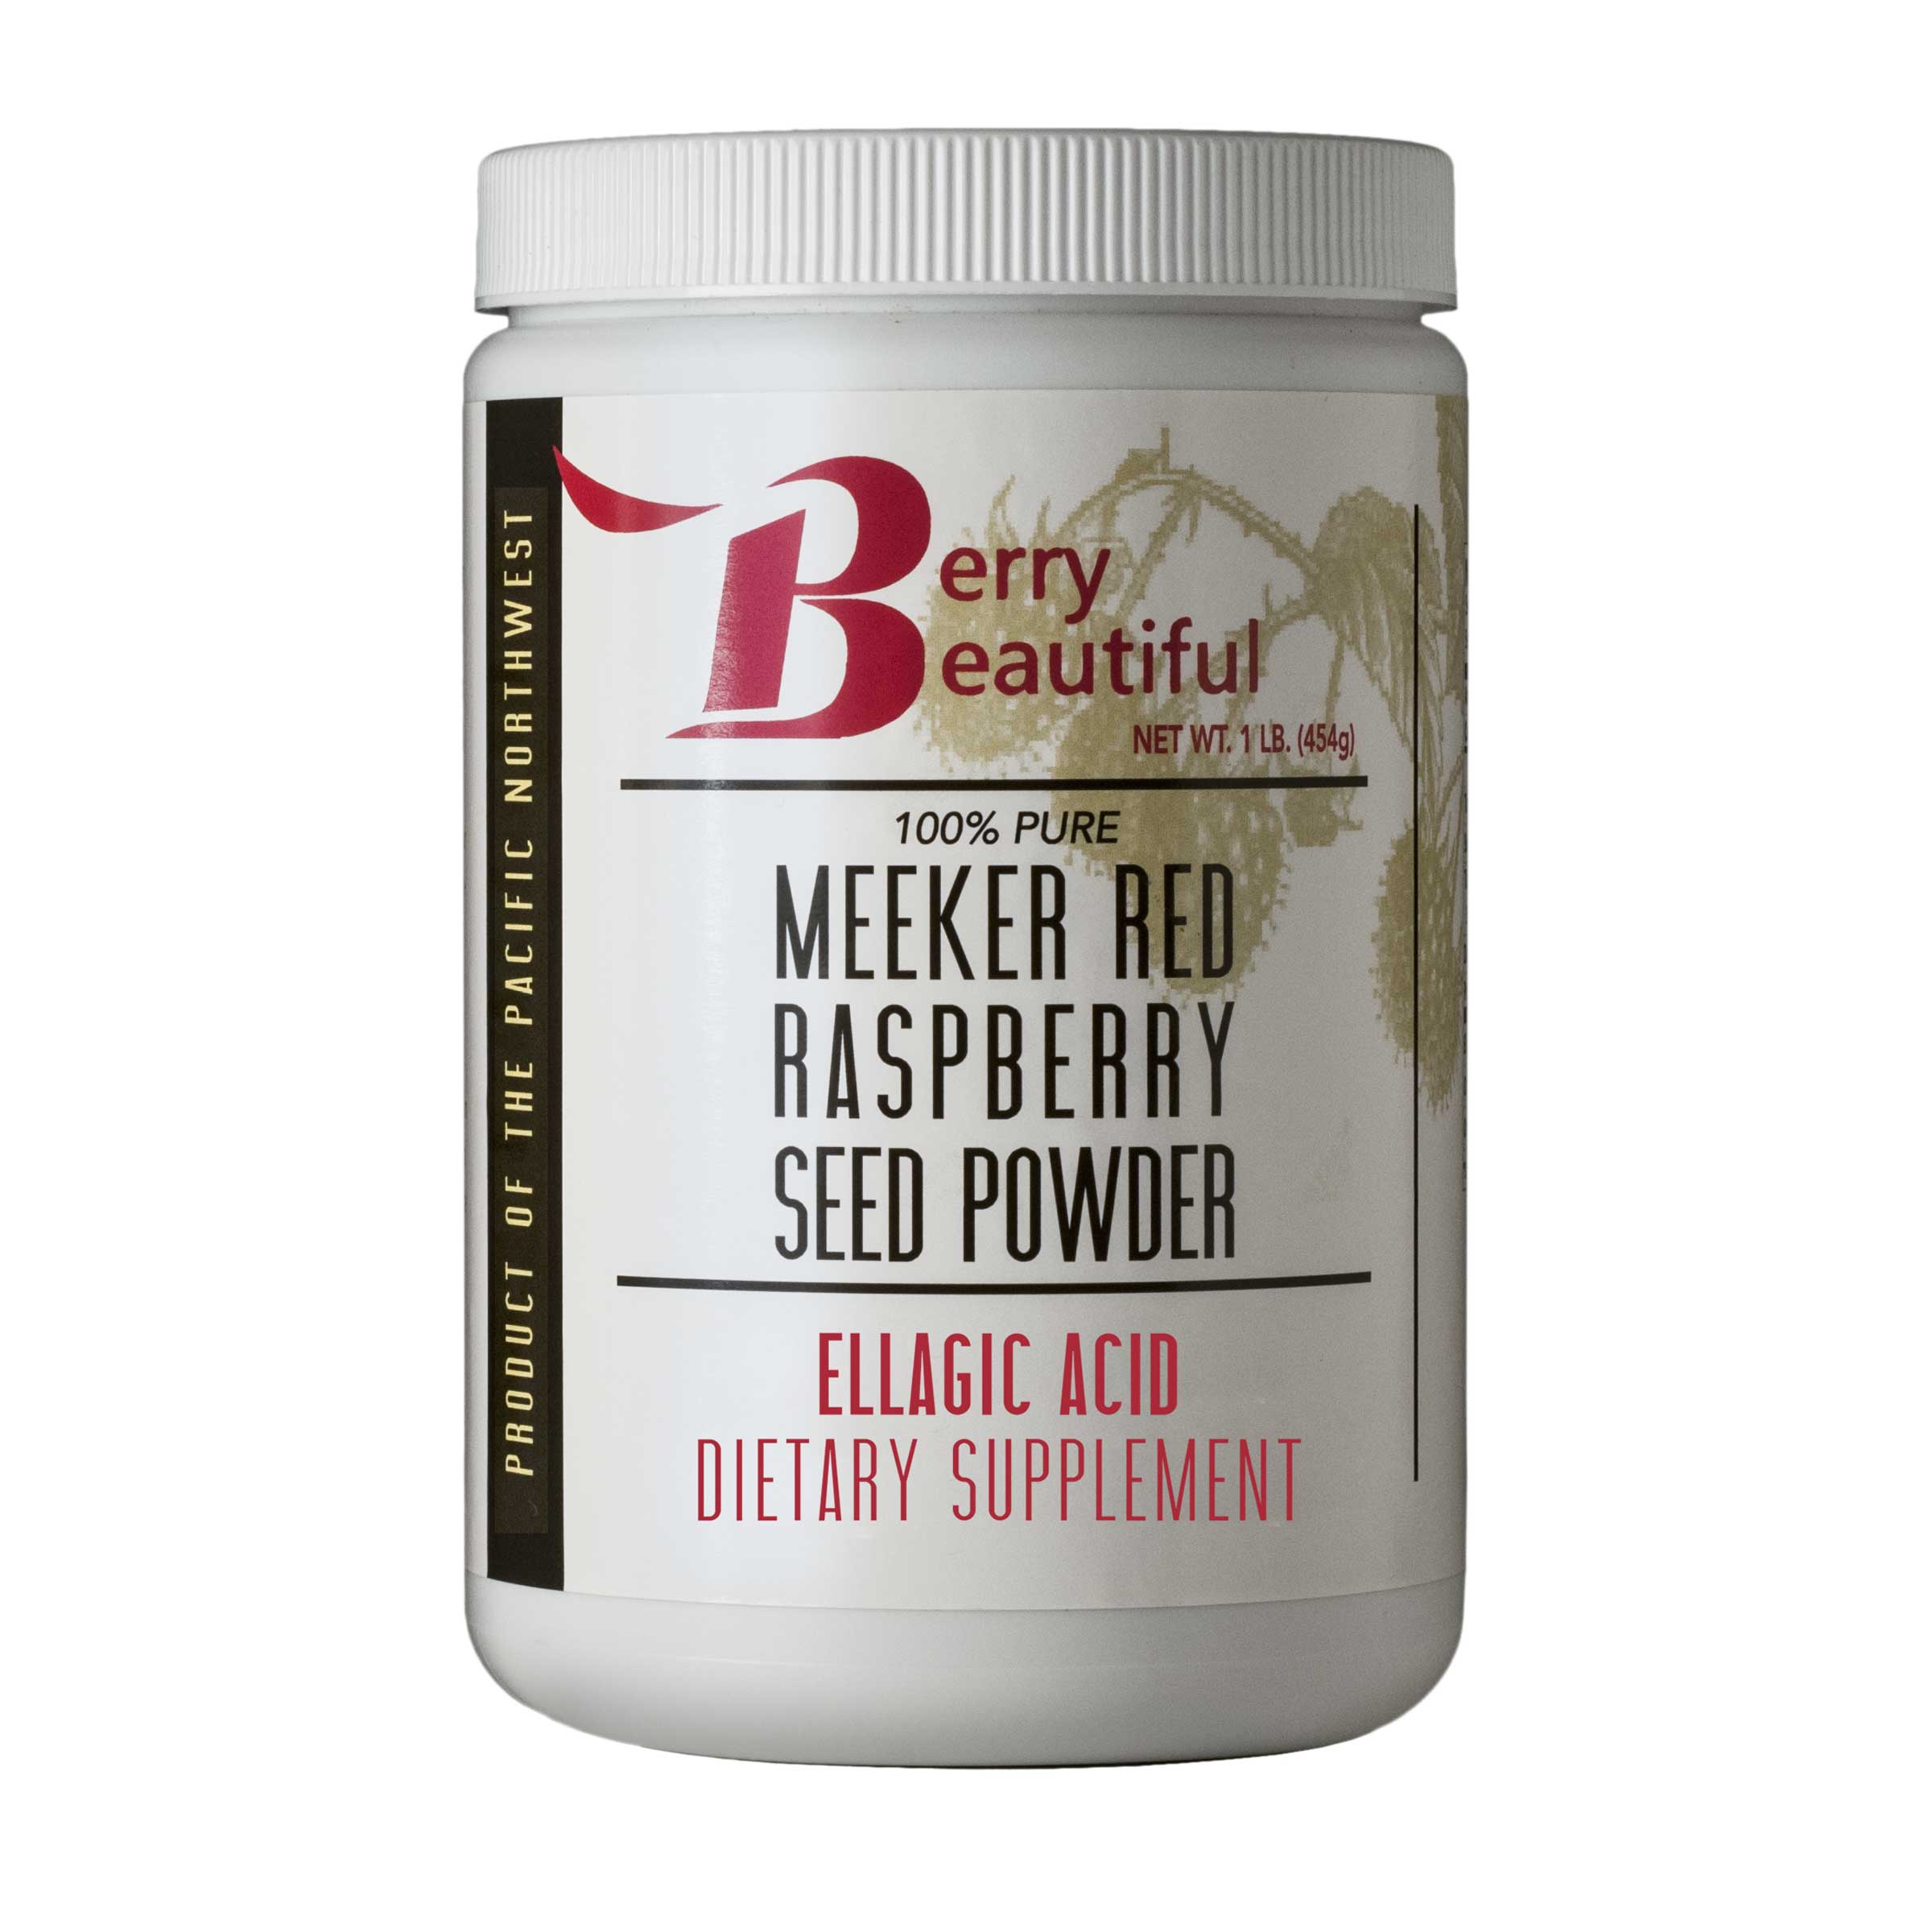 Meeker Red Raspberry Seed Powder